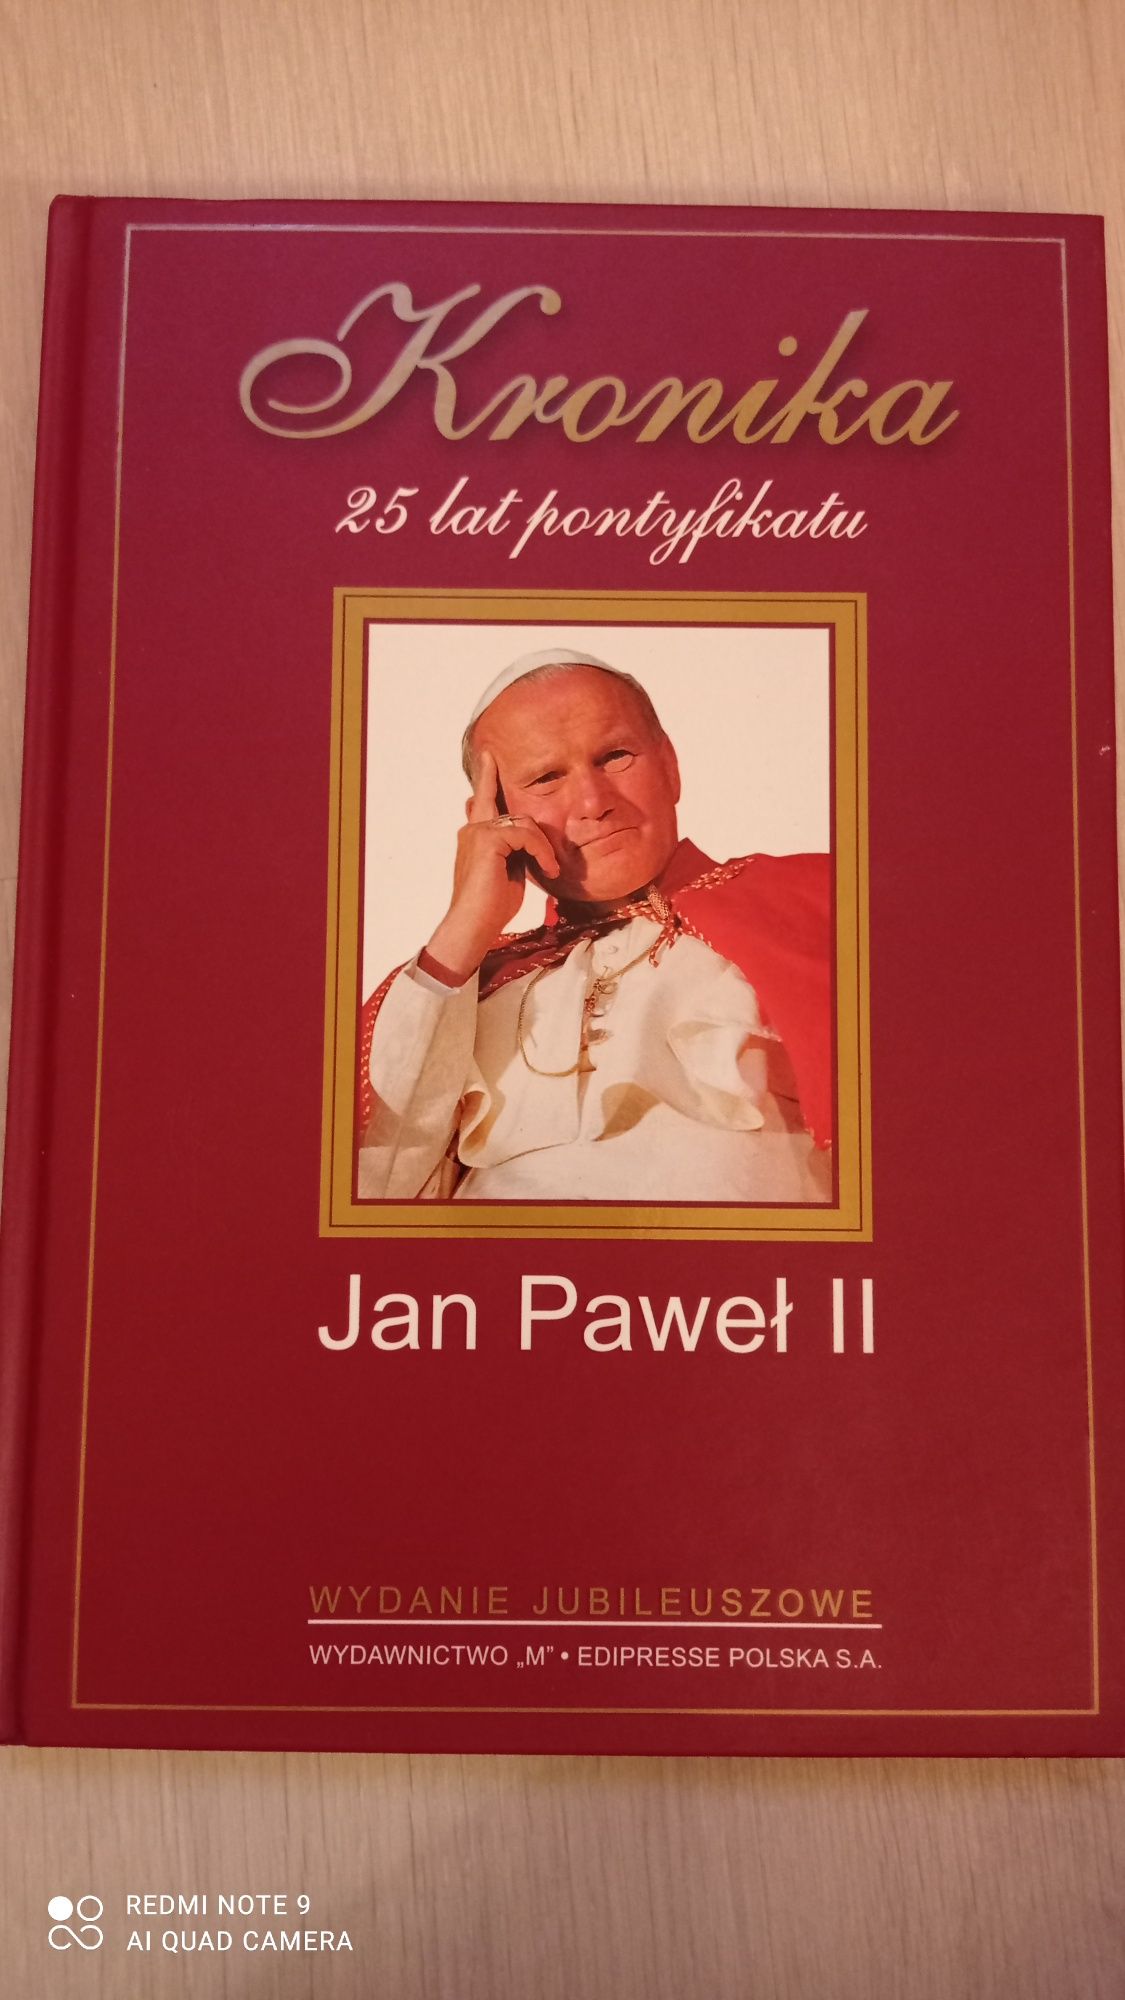 Albumy Jan Paweł II różne